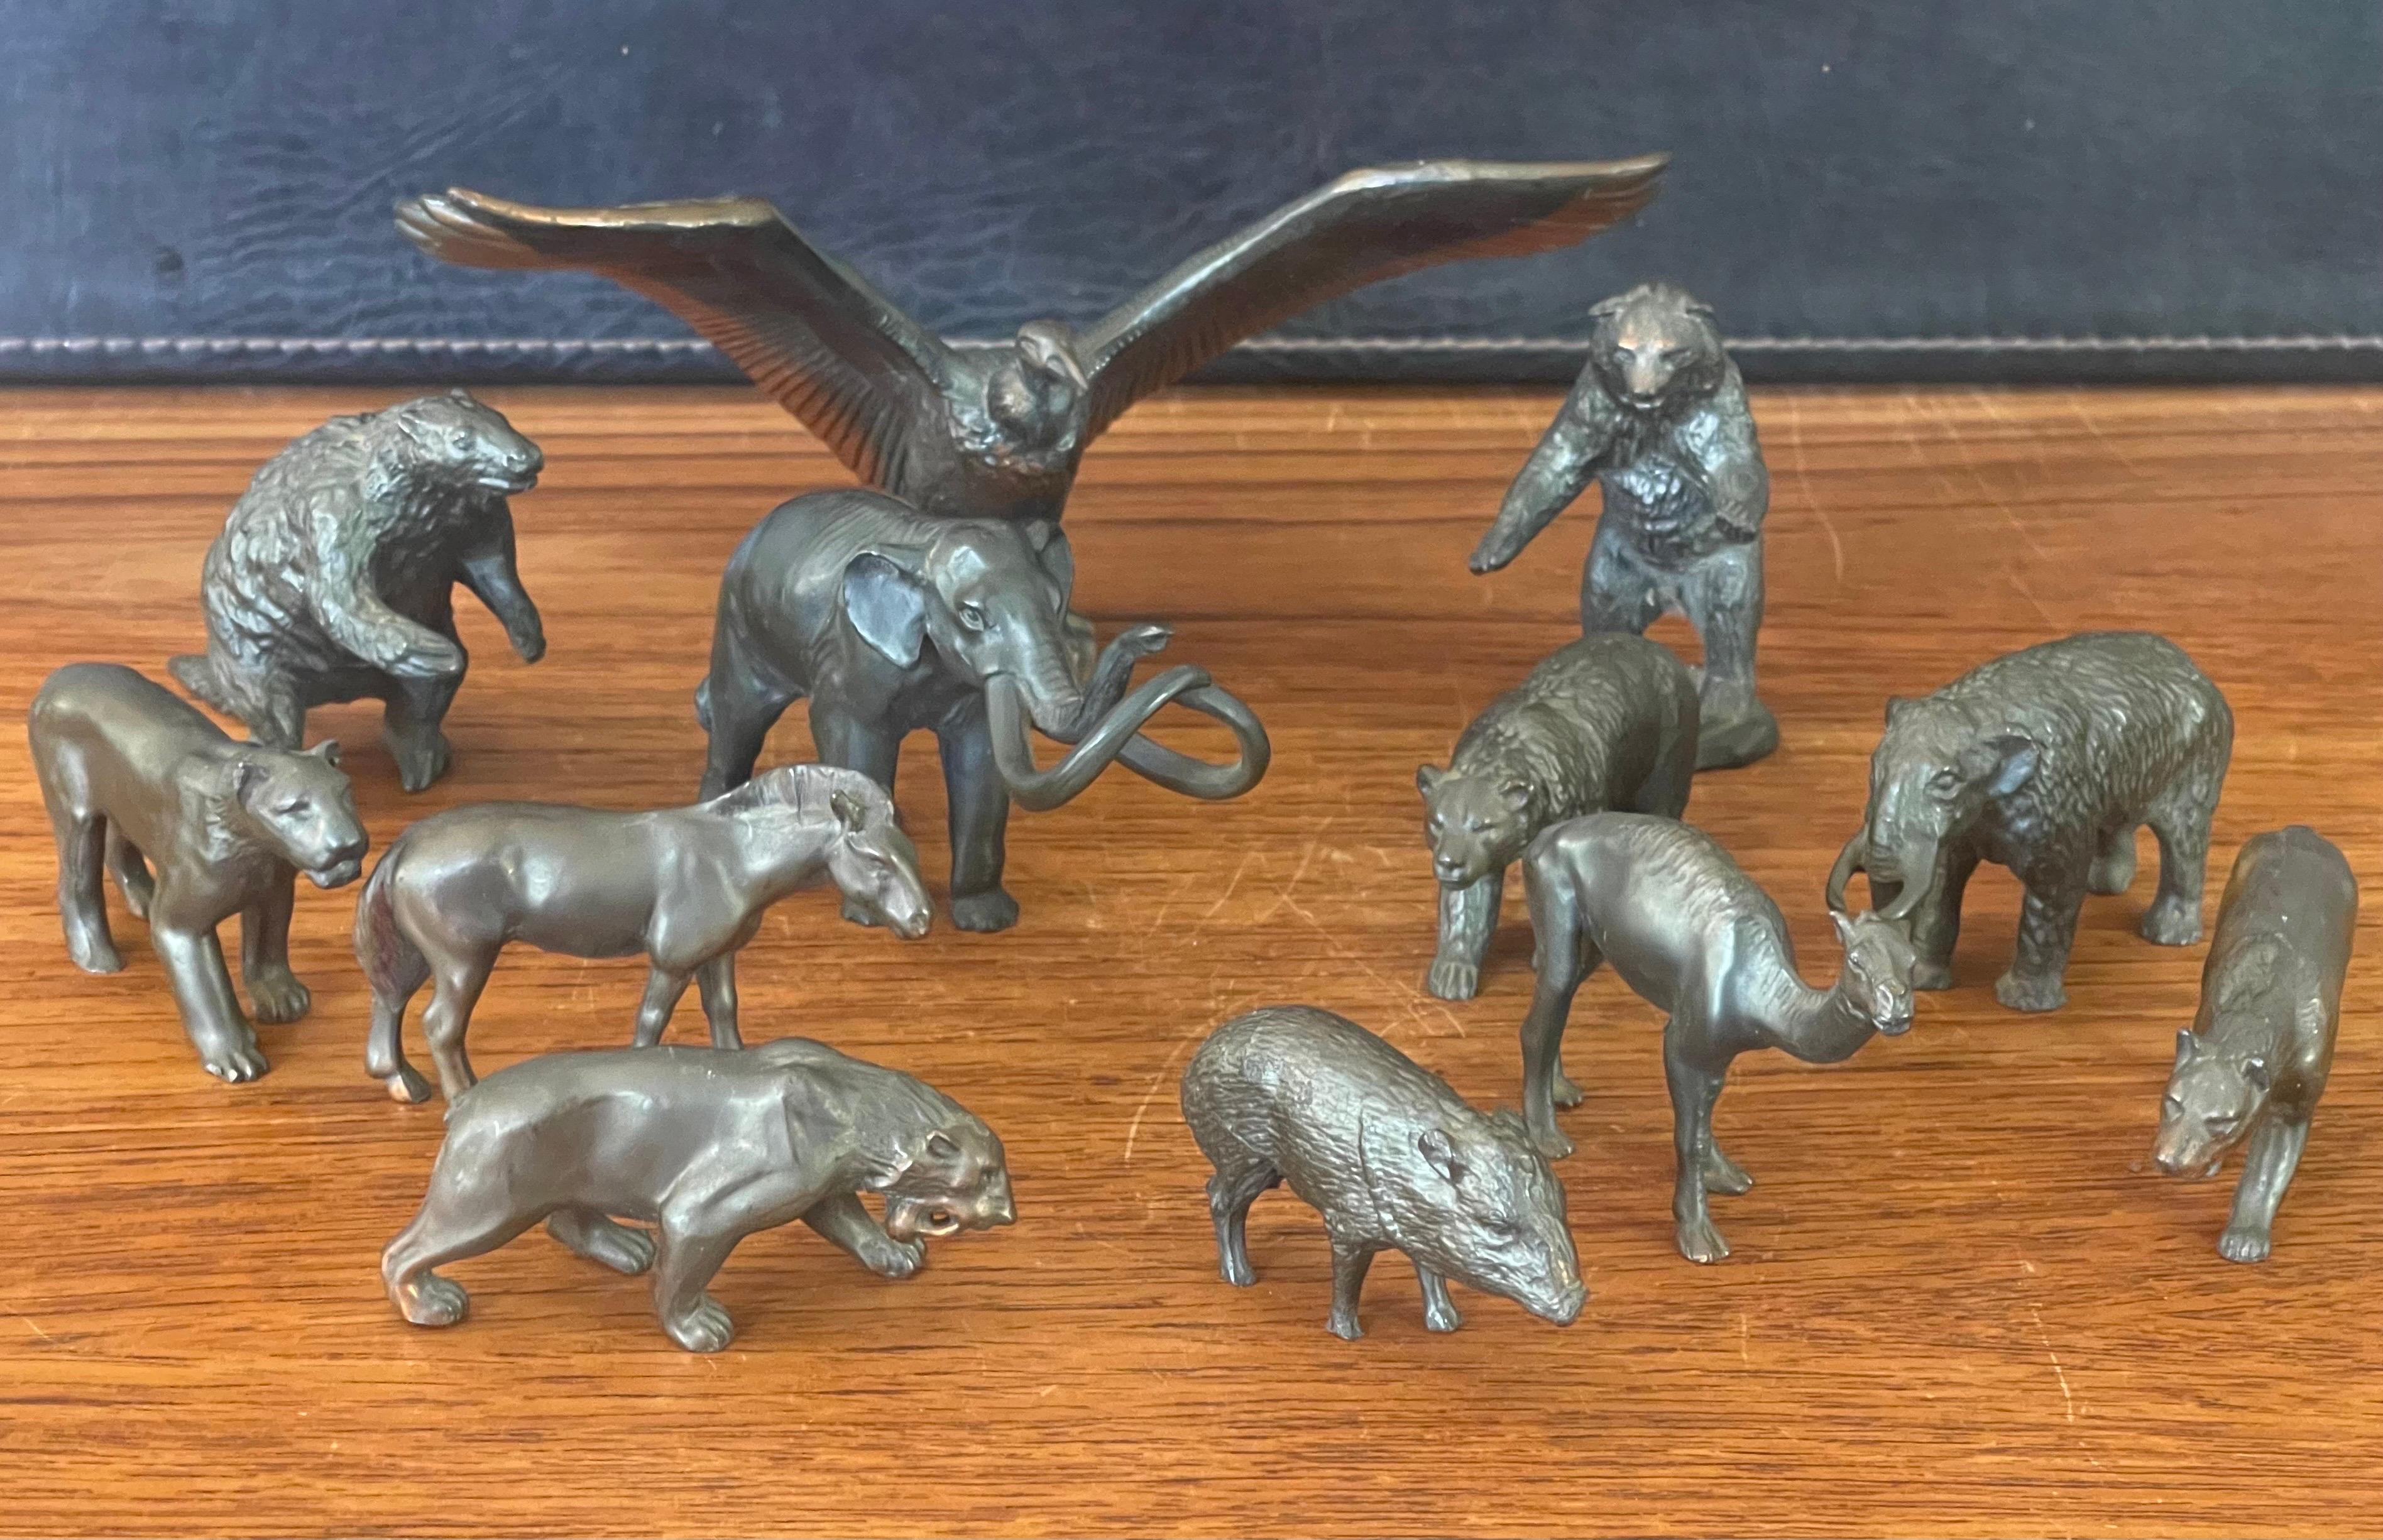 Eine sehr seltene Sammlung von zwölf Miniatur-Säugetierskulpturen aus Bronze aus der Eiszeit, die von Wm Otto für das Museum und den Souvenirladen der Teergruben von Rancho La Brea in den späten 1950er Jahren geschaffen wurden. Die Skulpturen wurden